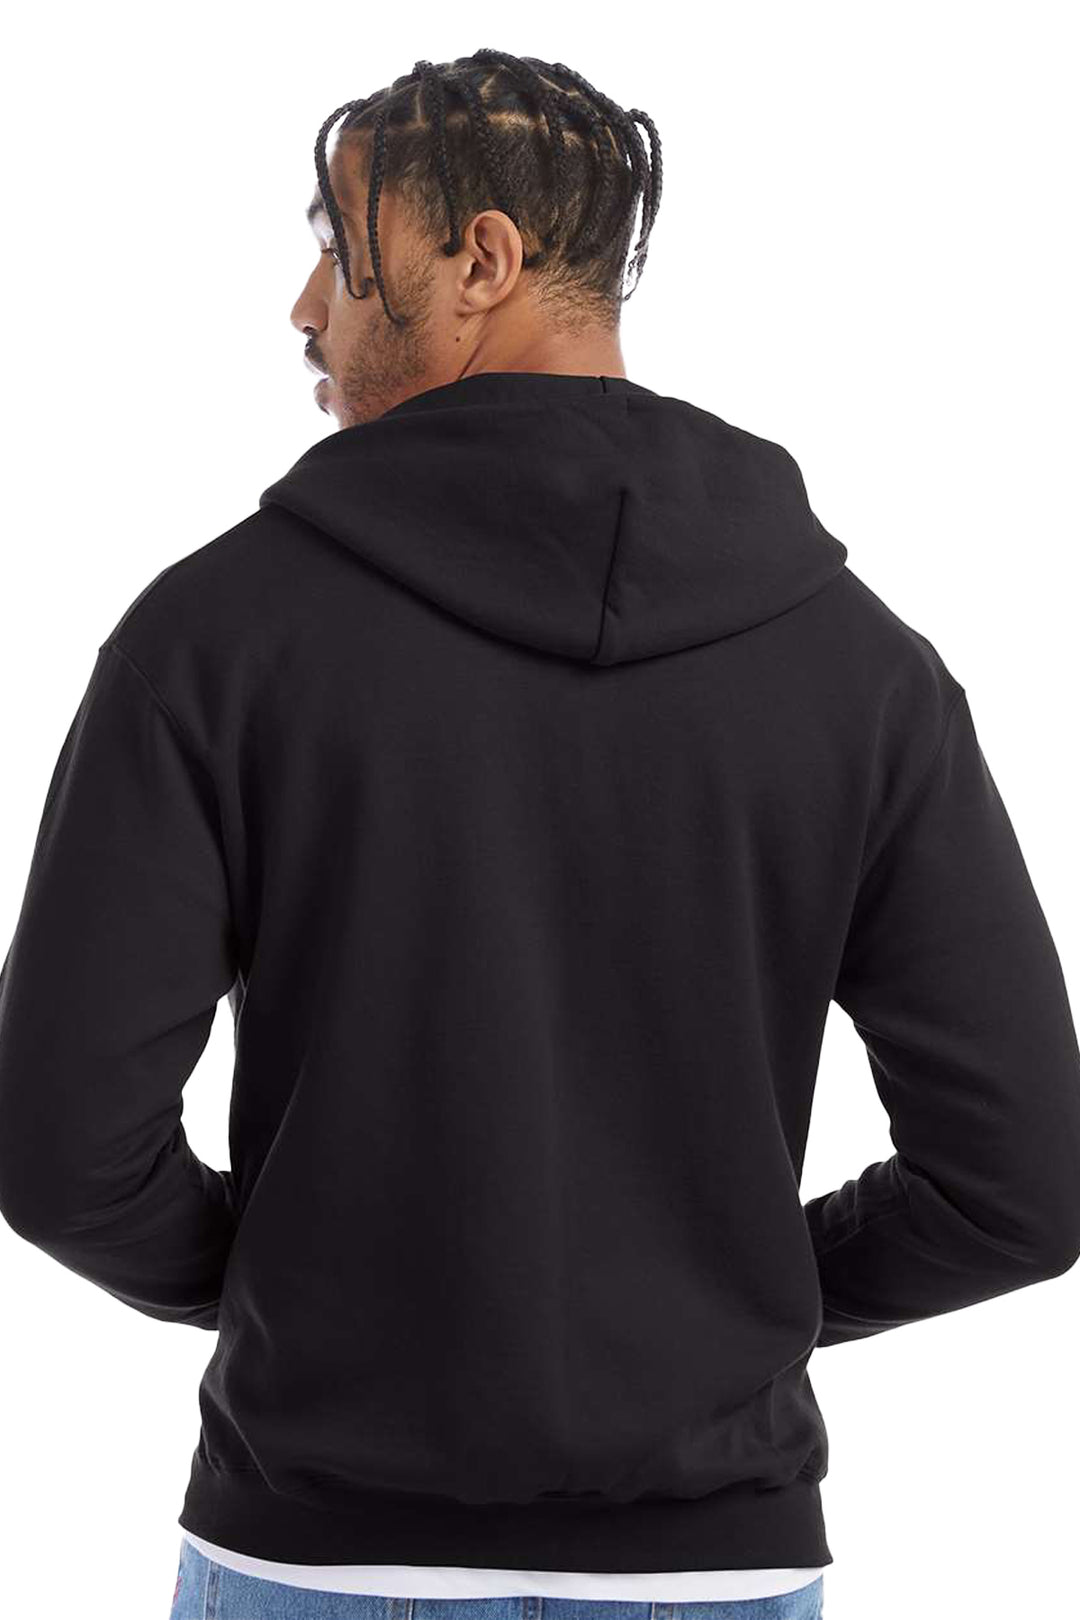 Powerblend Full-Zip Hooded Sweatshirt